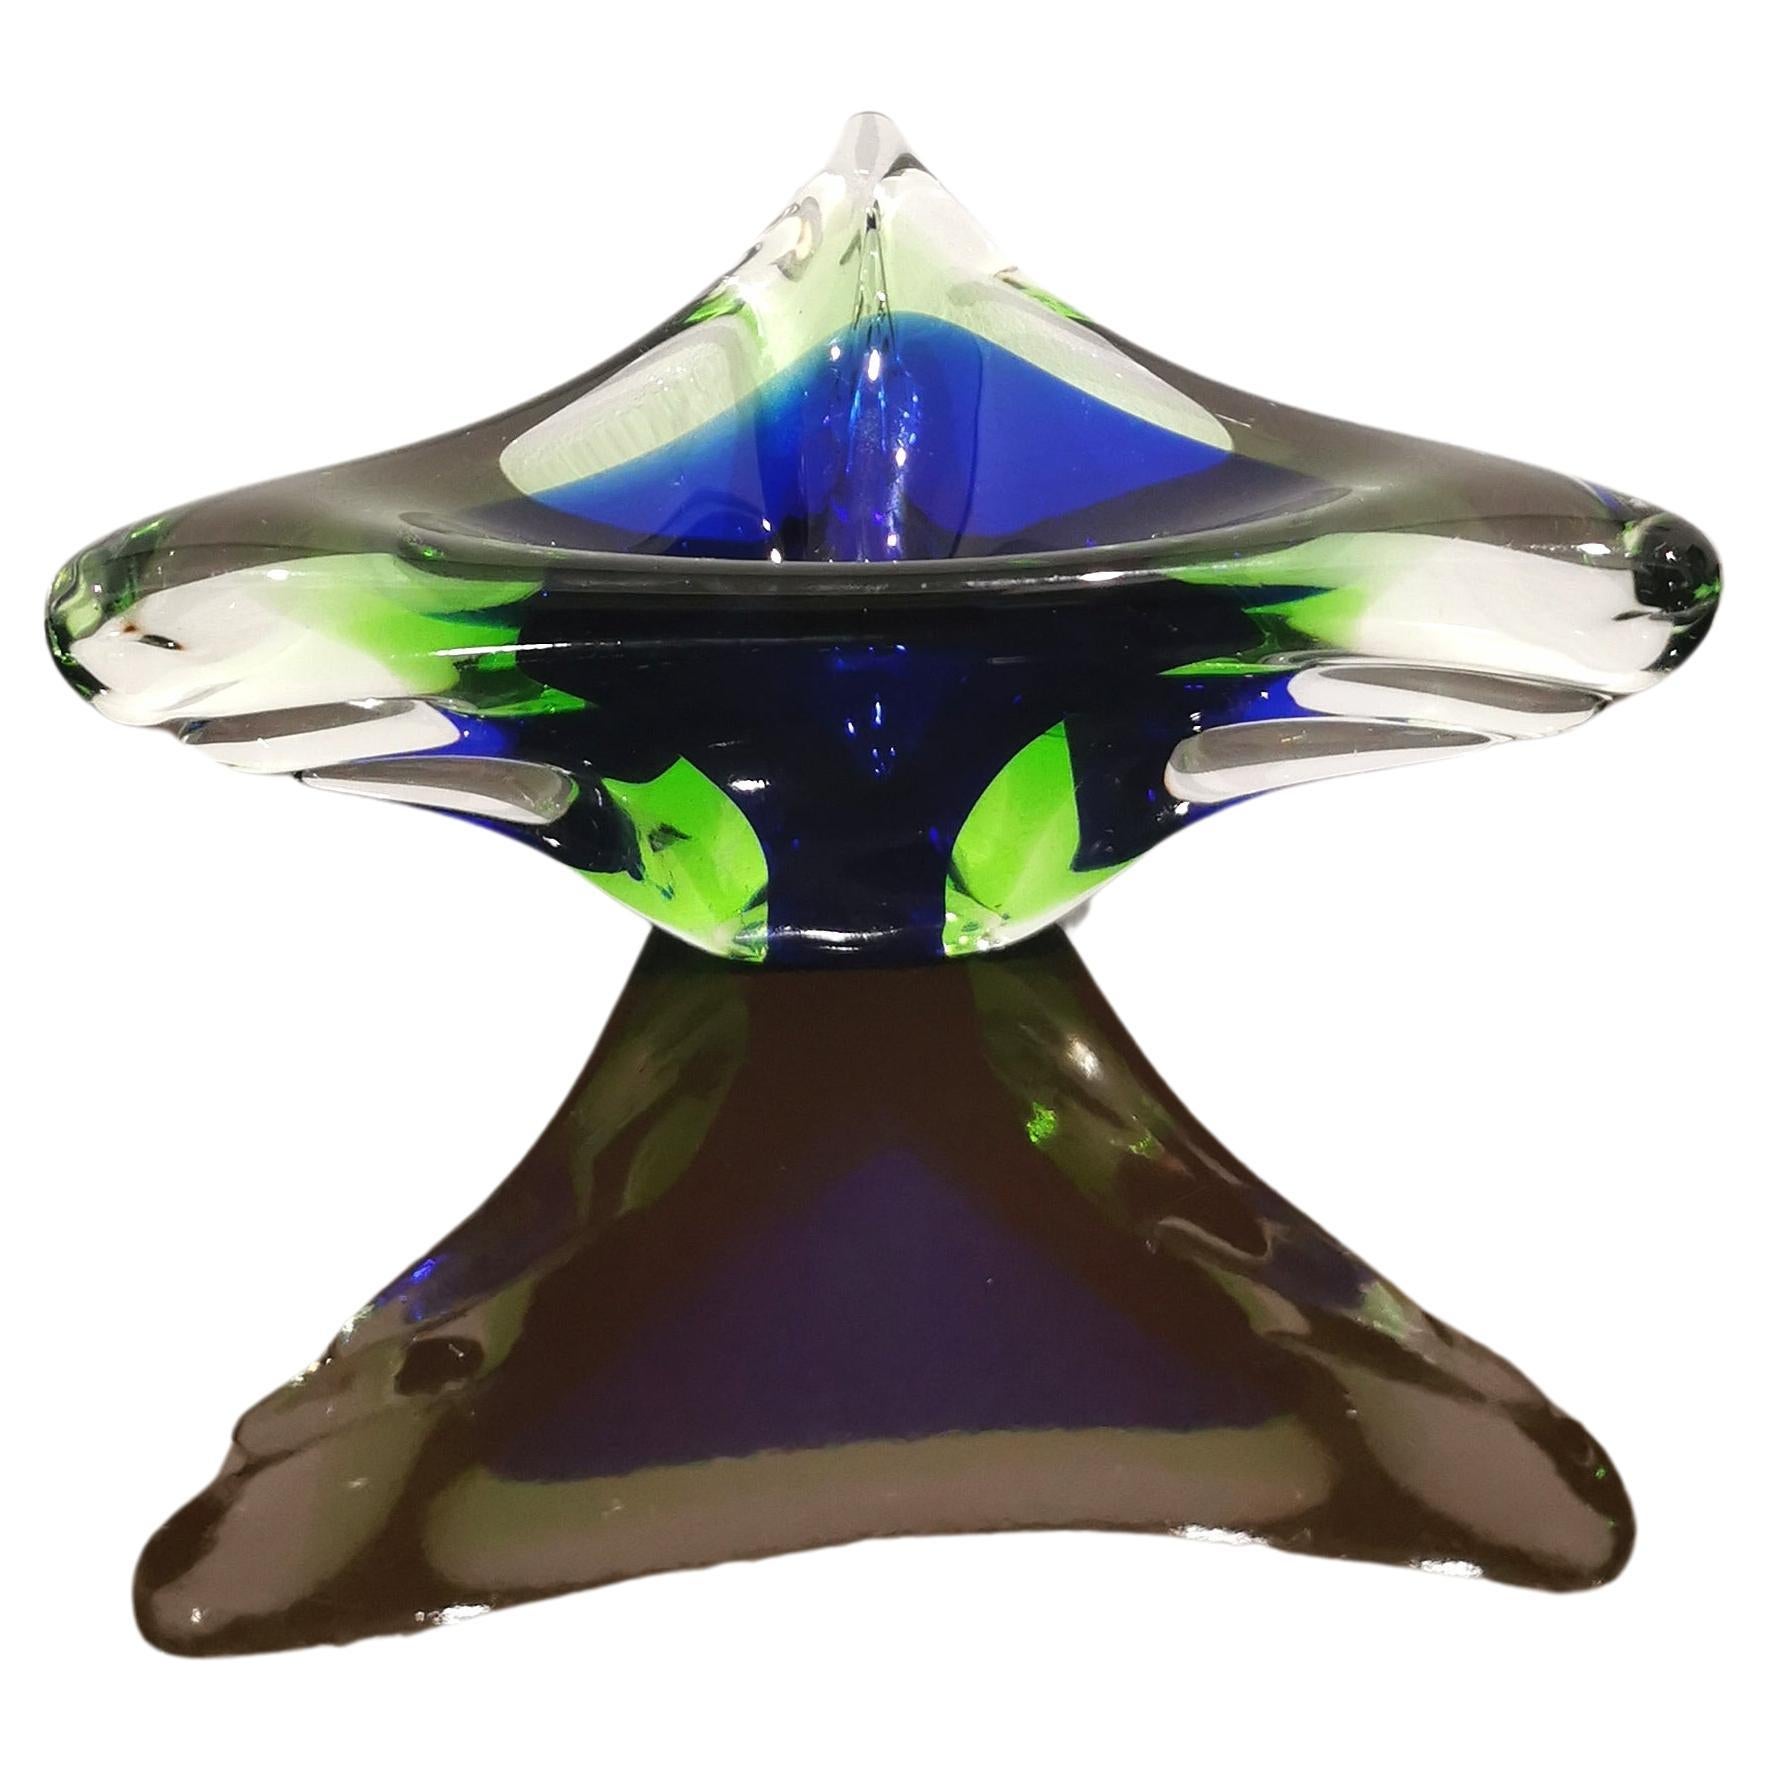 Videopoche/Dekorationsobjekt, hergestellt in Italien in den 1970er Jahren. Die dreieckige Videopoche wurde aus Murano-Glas in den Farben Mitternachtsblau, Flaschengrün und Transparent mit der berühmten 